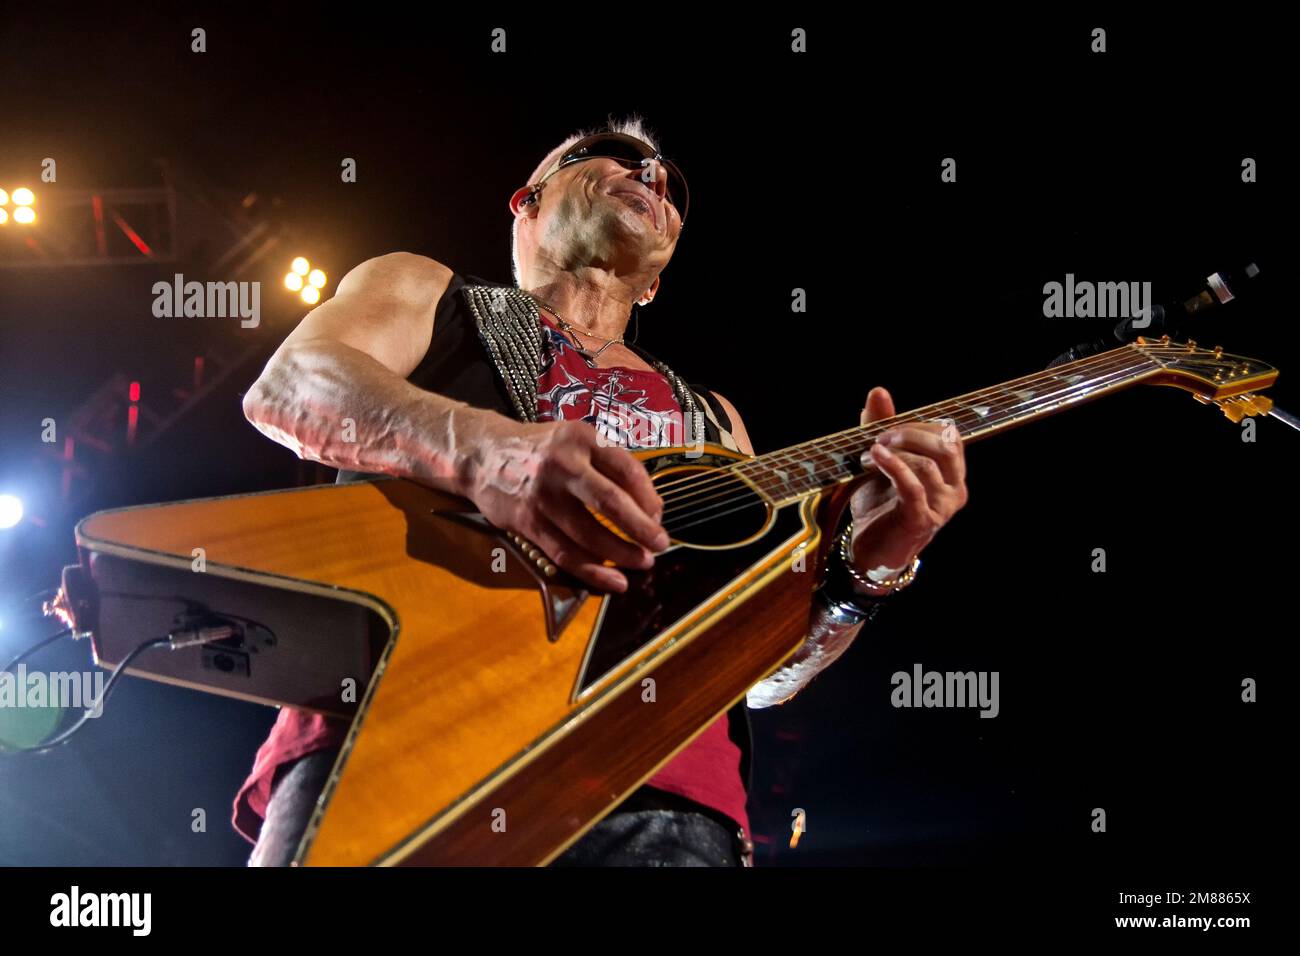 Live-photo di Rudolf Schenker, fondatore e chitarrista della band hard rock tedesca Scorpions. Foto Stock